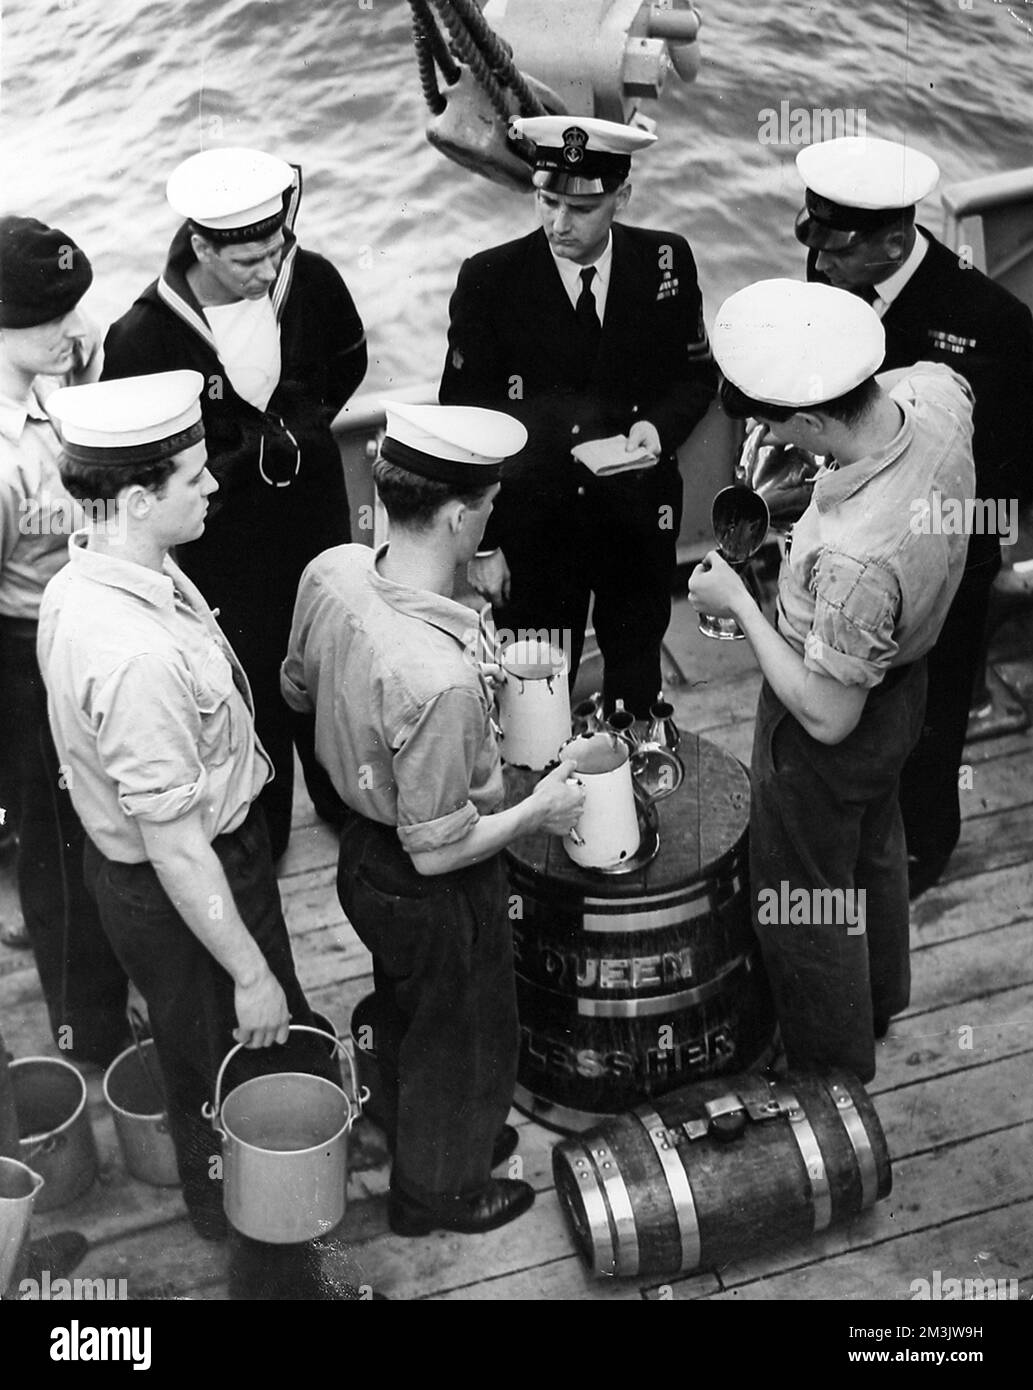 Das Foto zeigt die Verteilung von Rum auf die Quoten an Bord von HMS „Cleopatra“ nach Königin Elizabeth II. Erster Bestellung – „Aufsplittern der Hauptstütze“ – nach ihrer Überprüfung der Flotte. Wie sich zeigt, beobachten mehrere Beamte die Verfahren, um die ordnungsgemäße Zuweisung sicherzustellen. Datum: 1953 Stockfoto